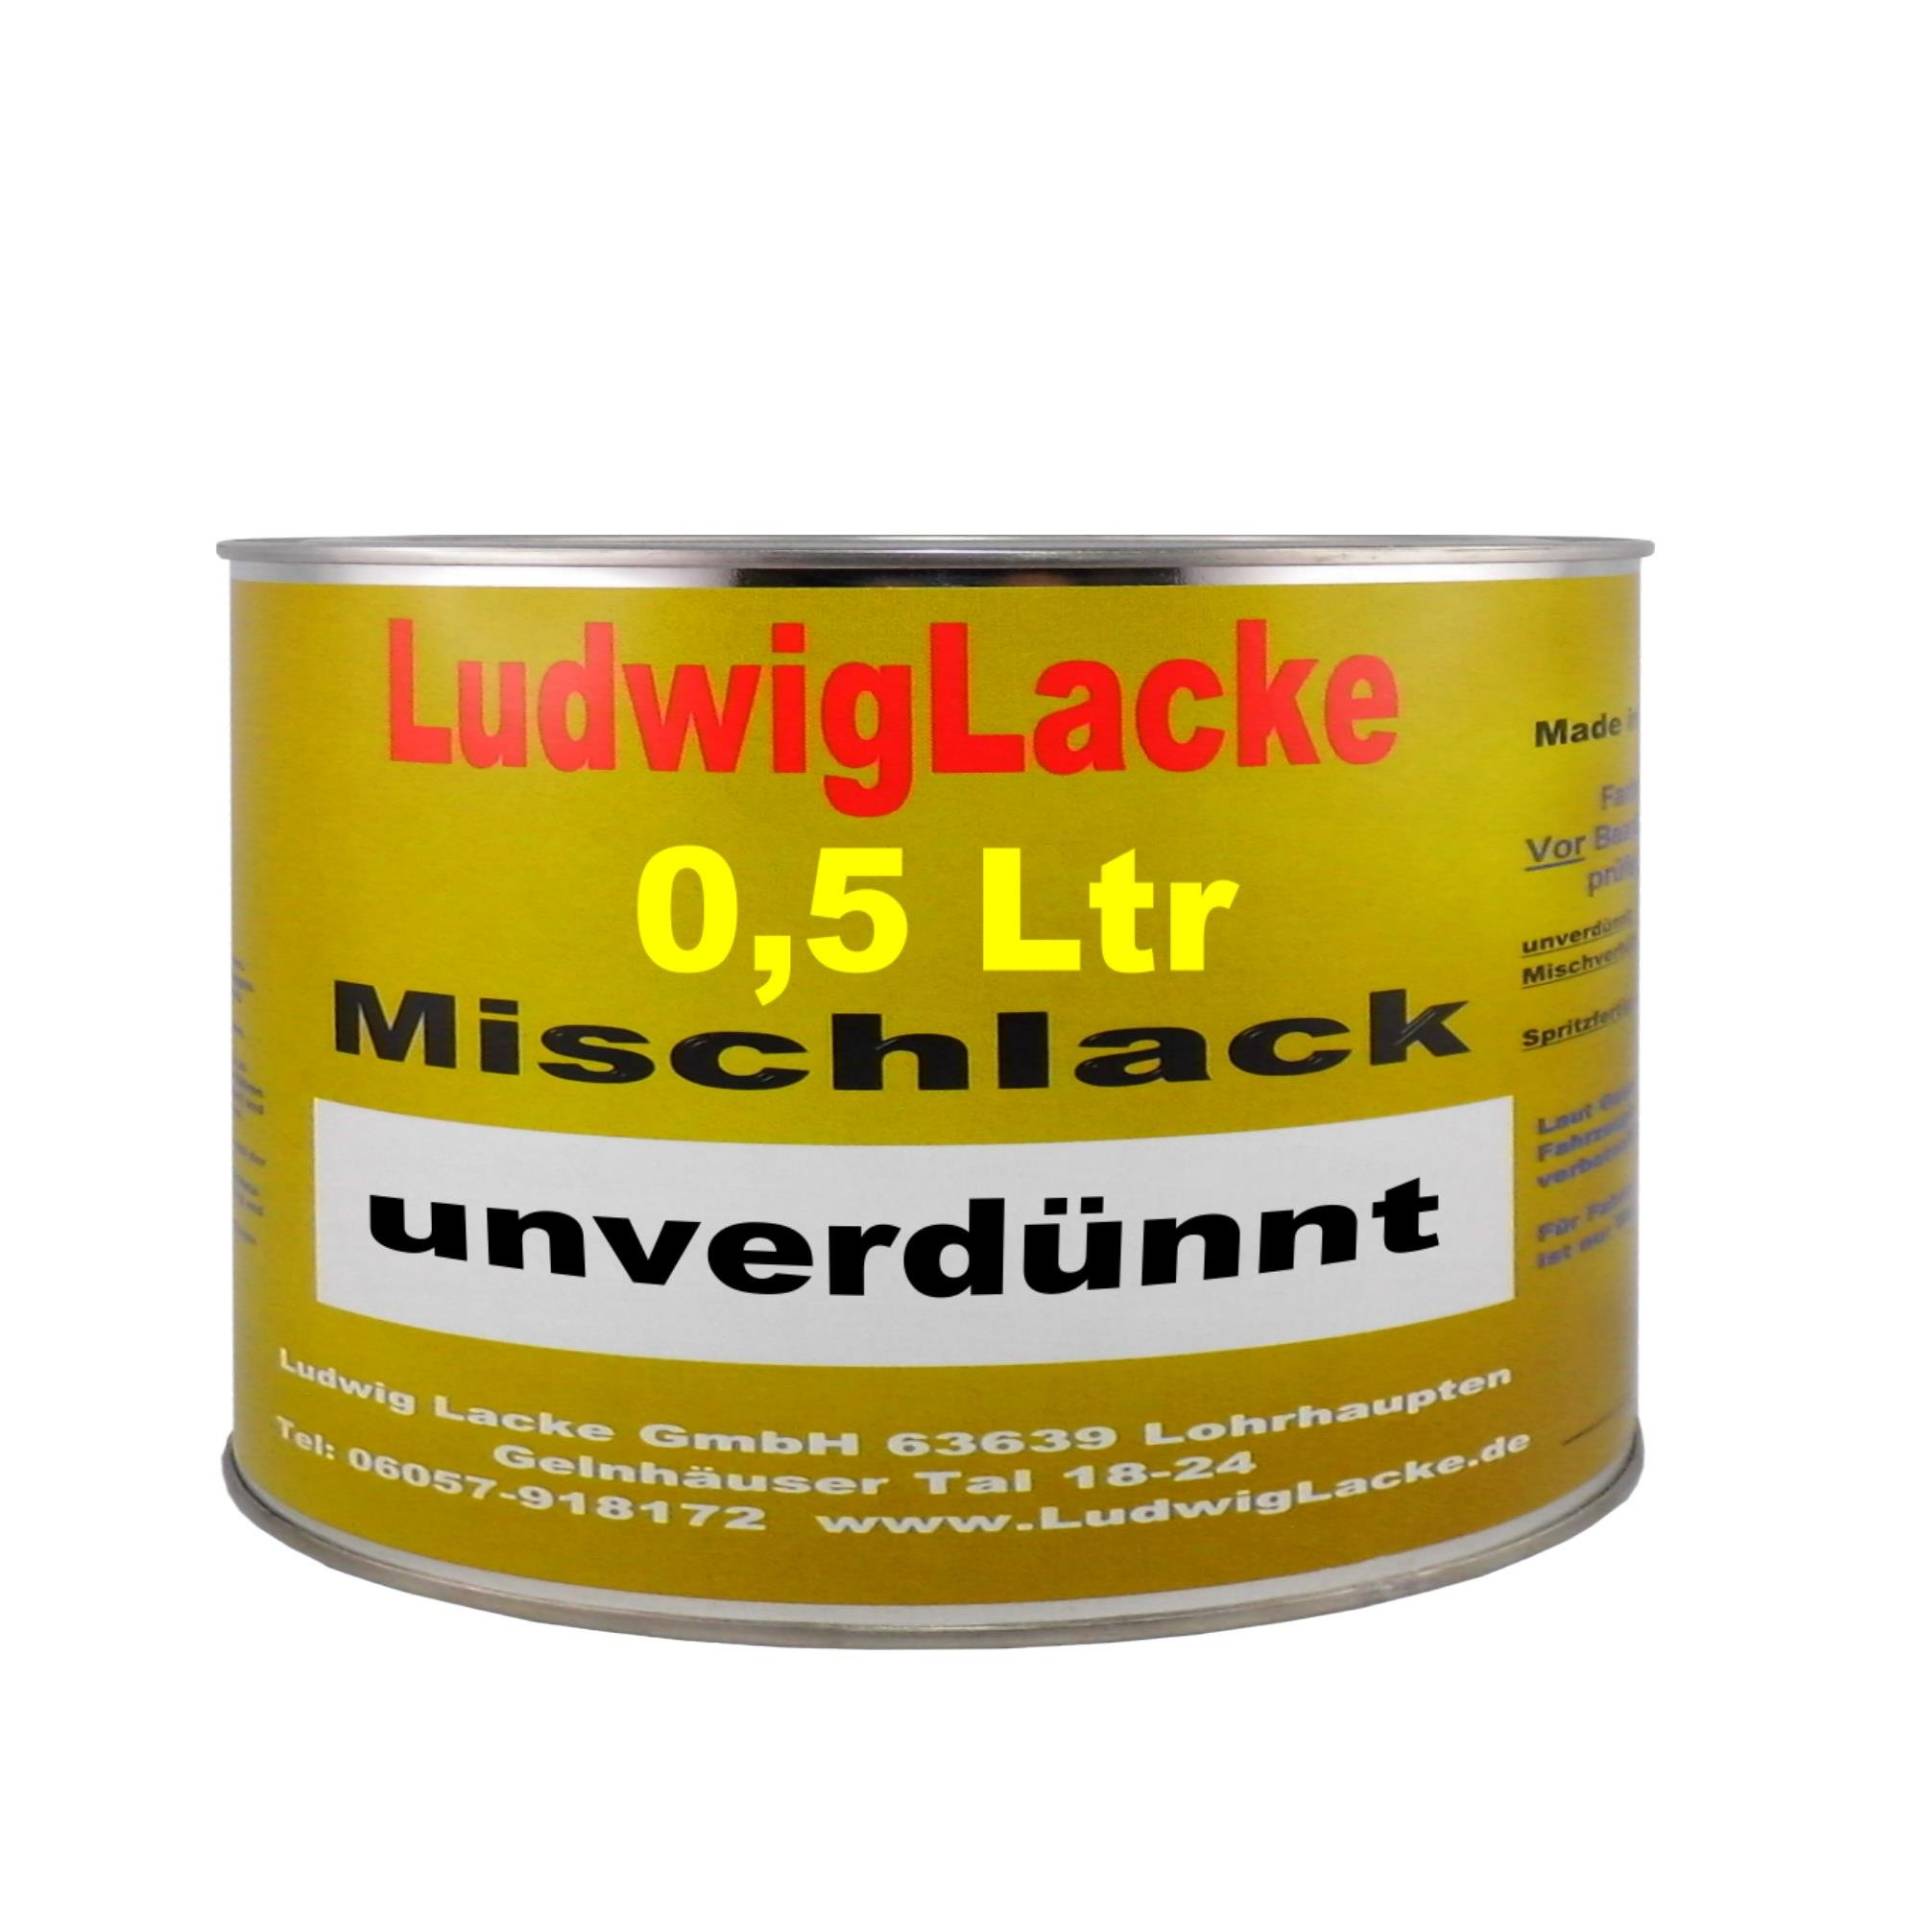 Ludwig Lacke 500 ml unverdünnter Autolack für VW Grauweiss R902 Bj.91-11 von Ludwig Lacke